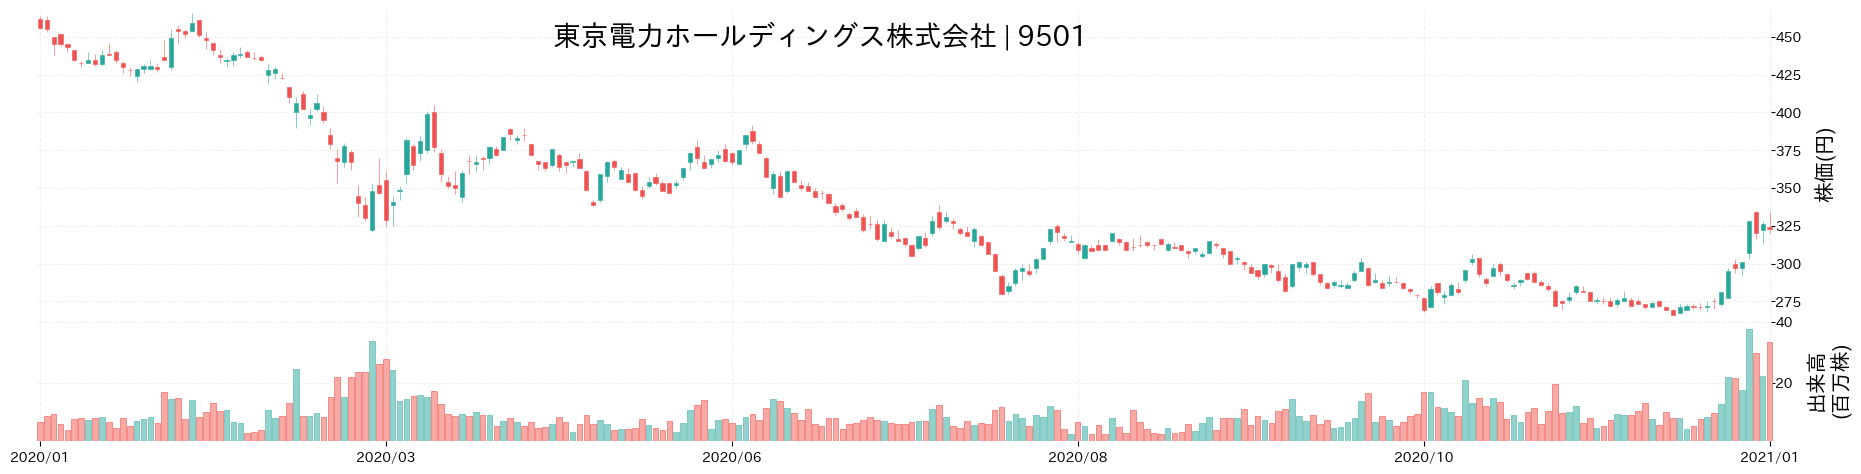 東京電力ホールディングスの株価推移(2020)